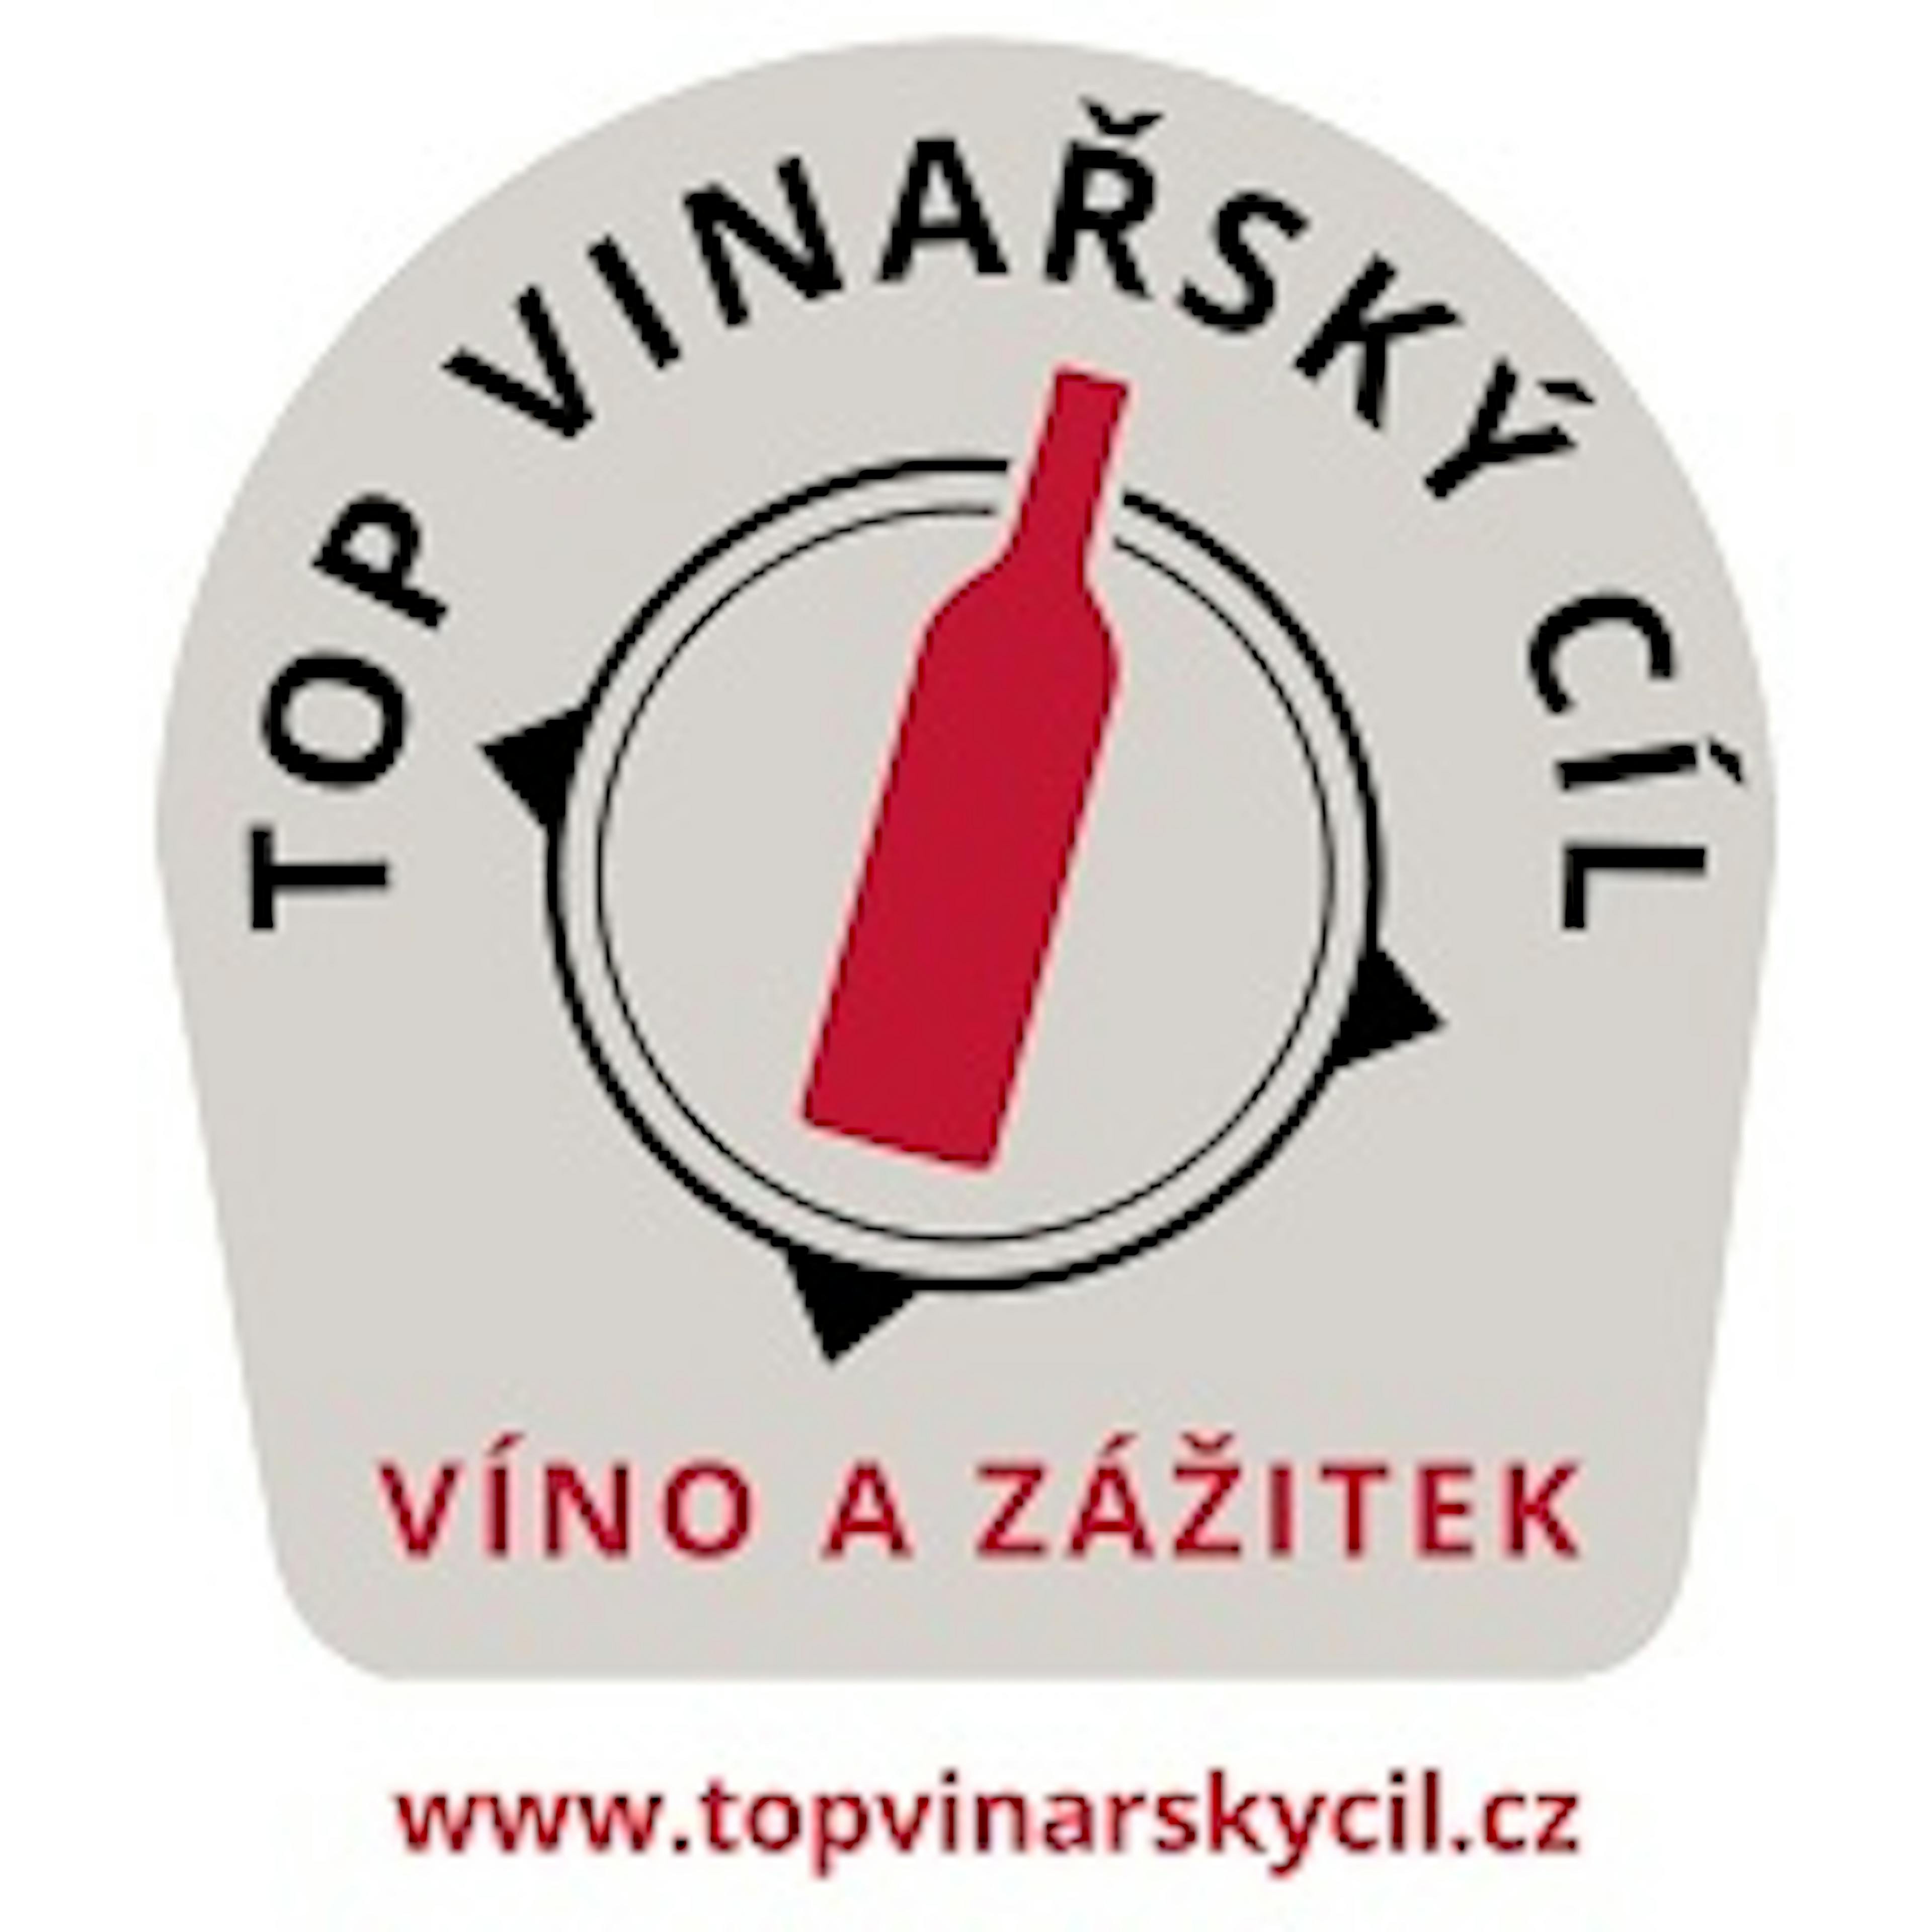 Top vinařský cíl logo